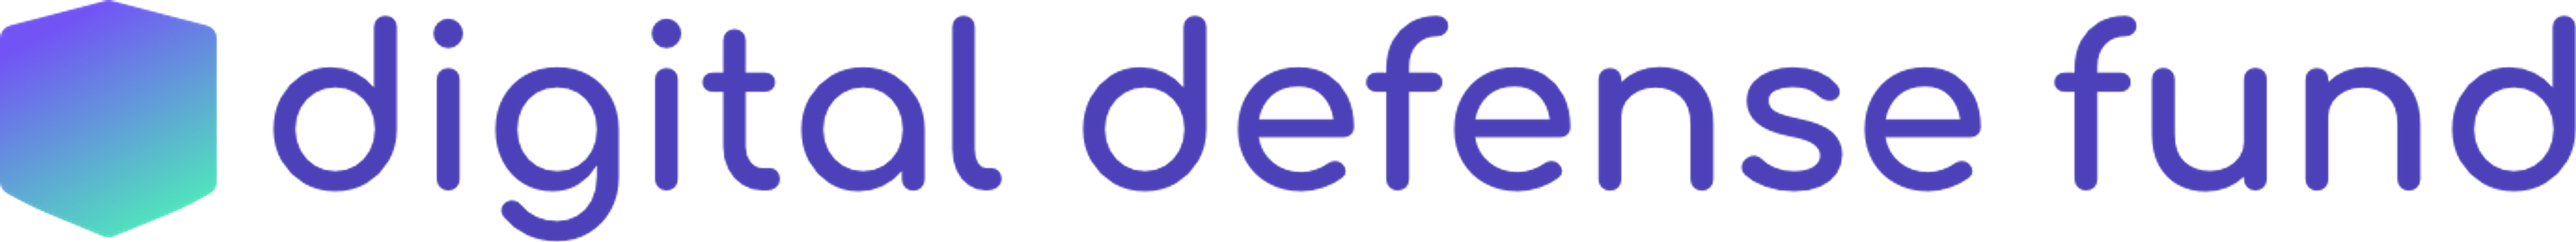 Digital defense fund logo